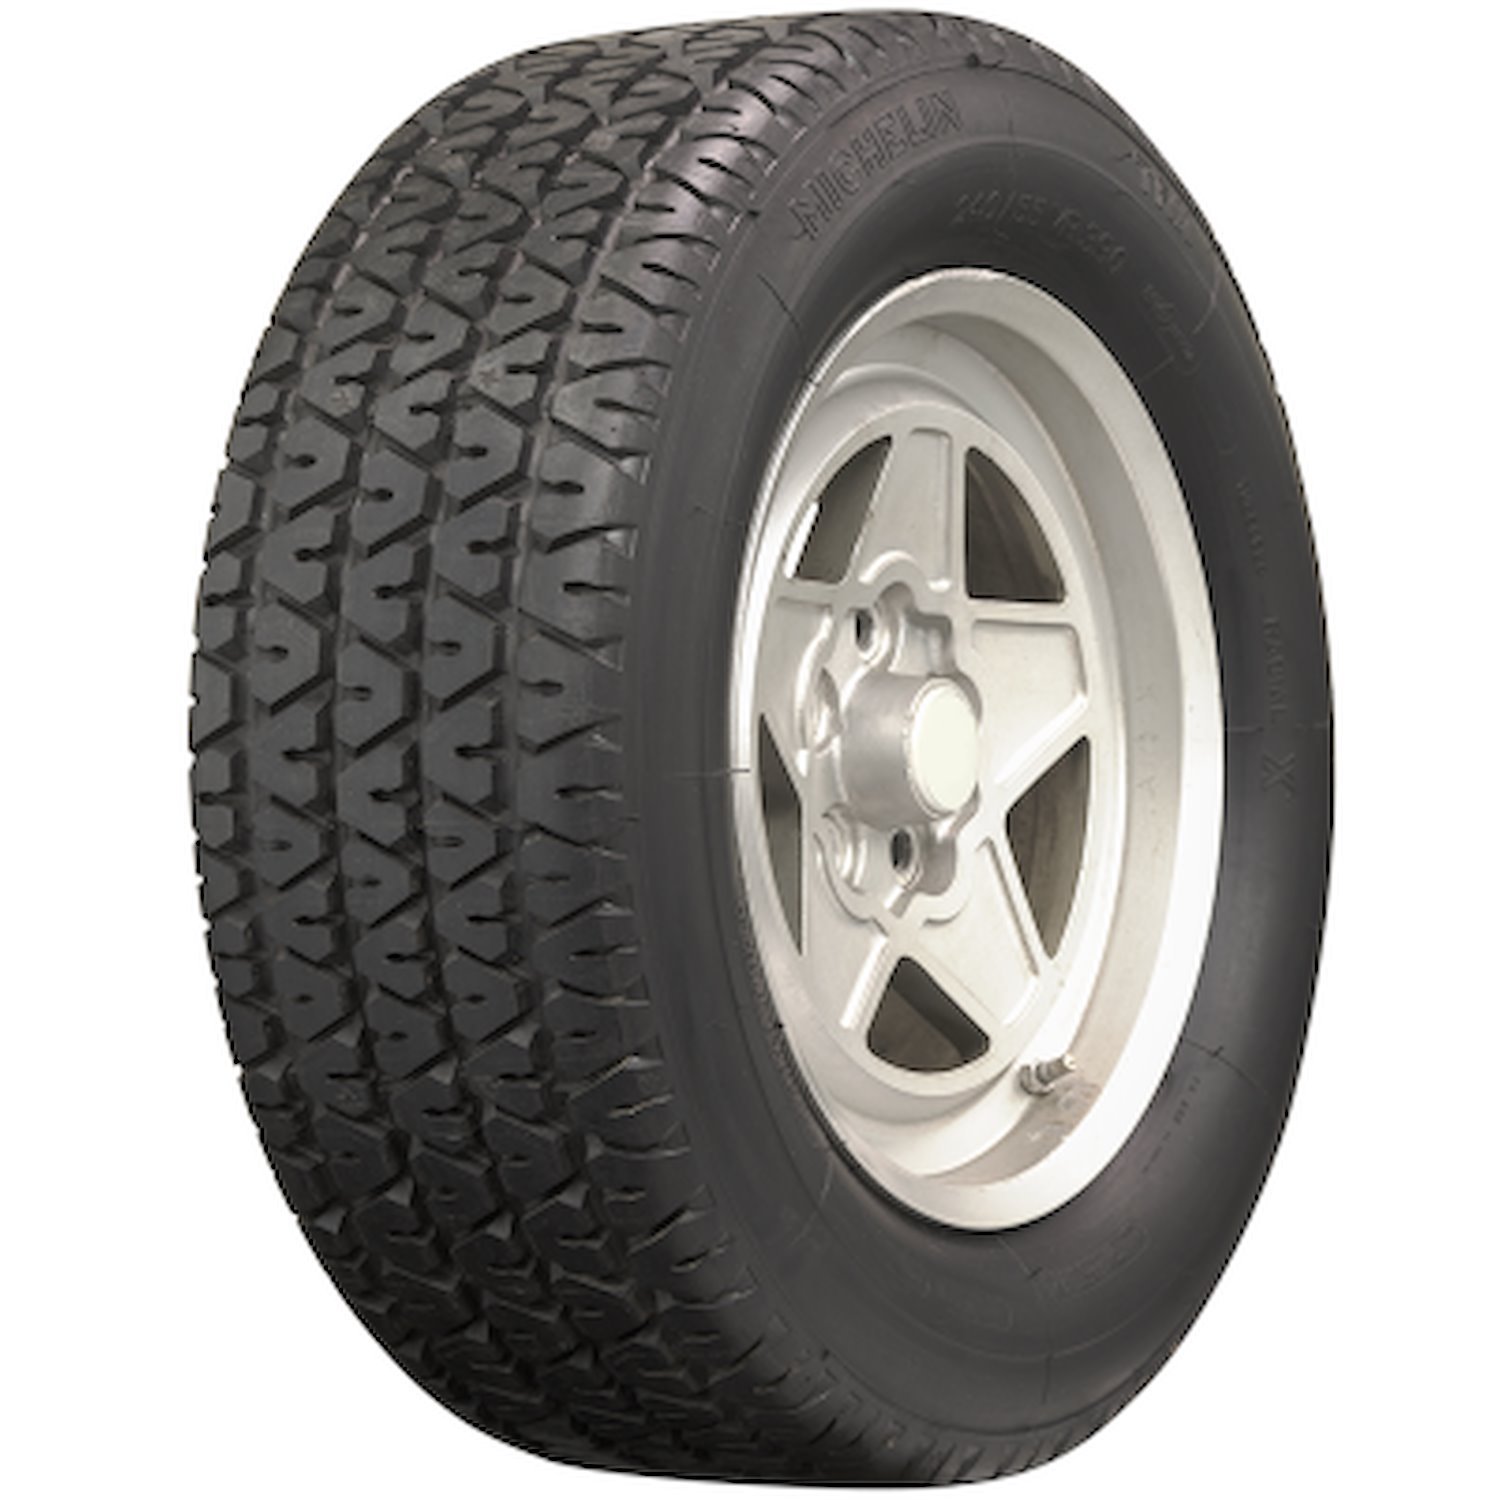 631944 Tire, Michelin TRX-B, 200/60VR390 90V